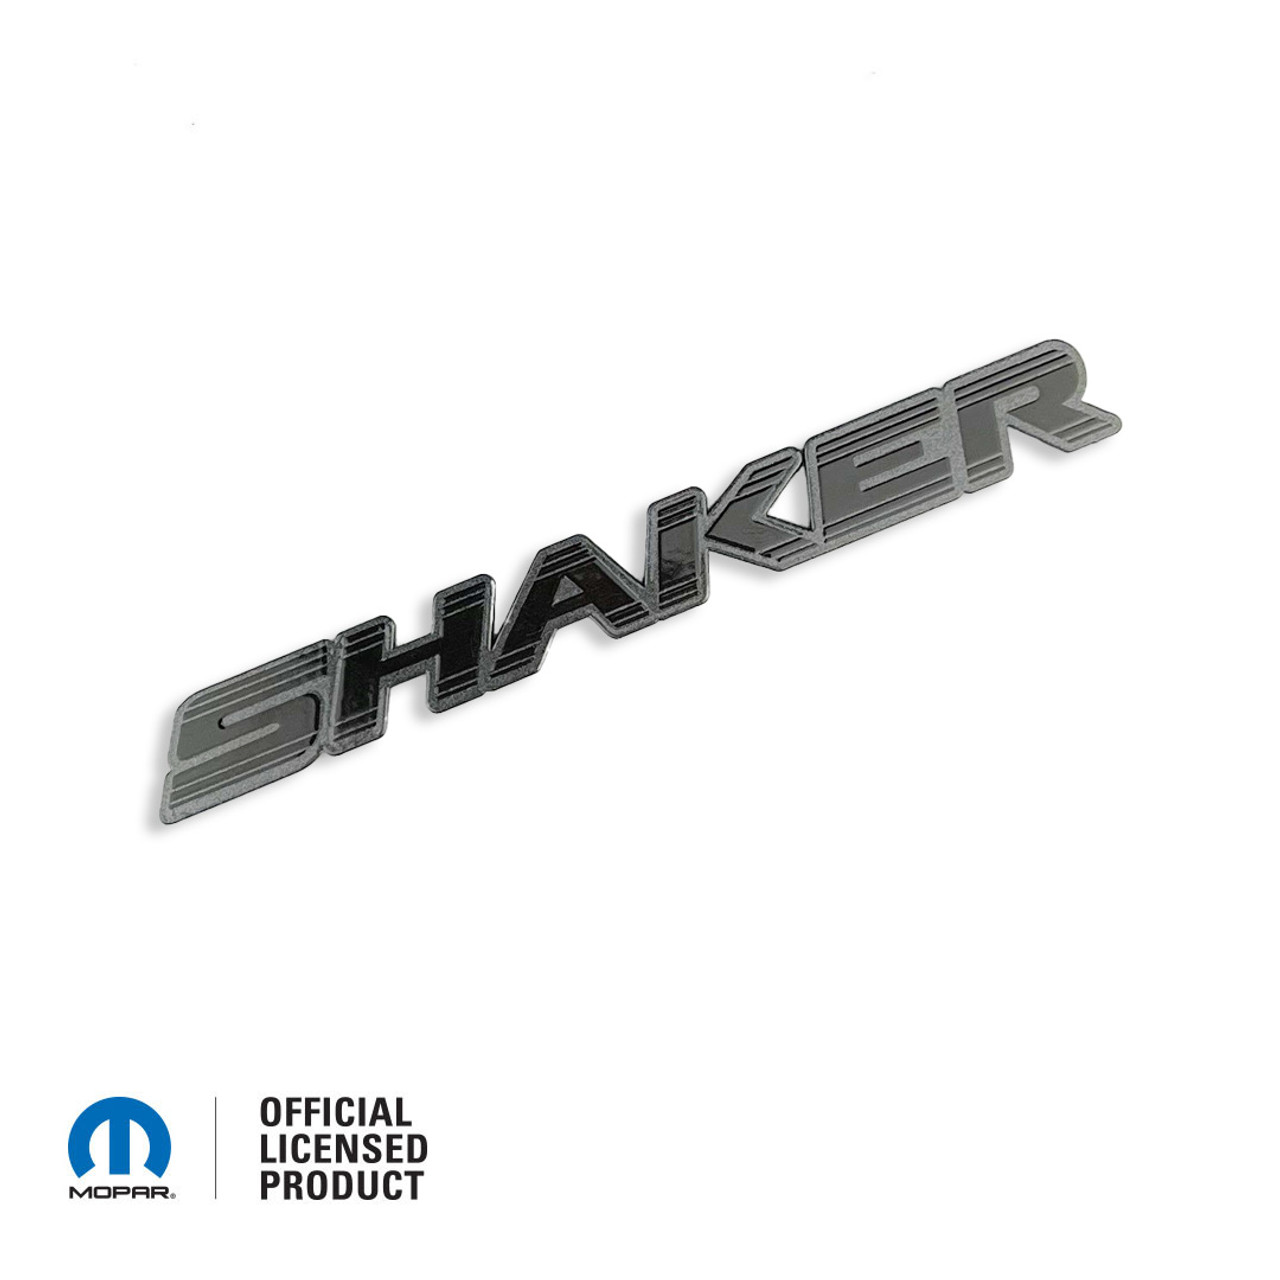 Logo Shaker